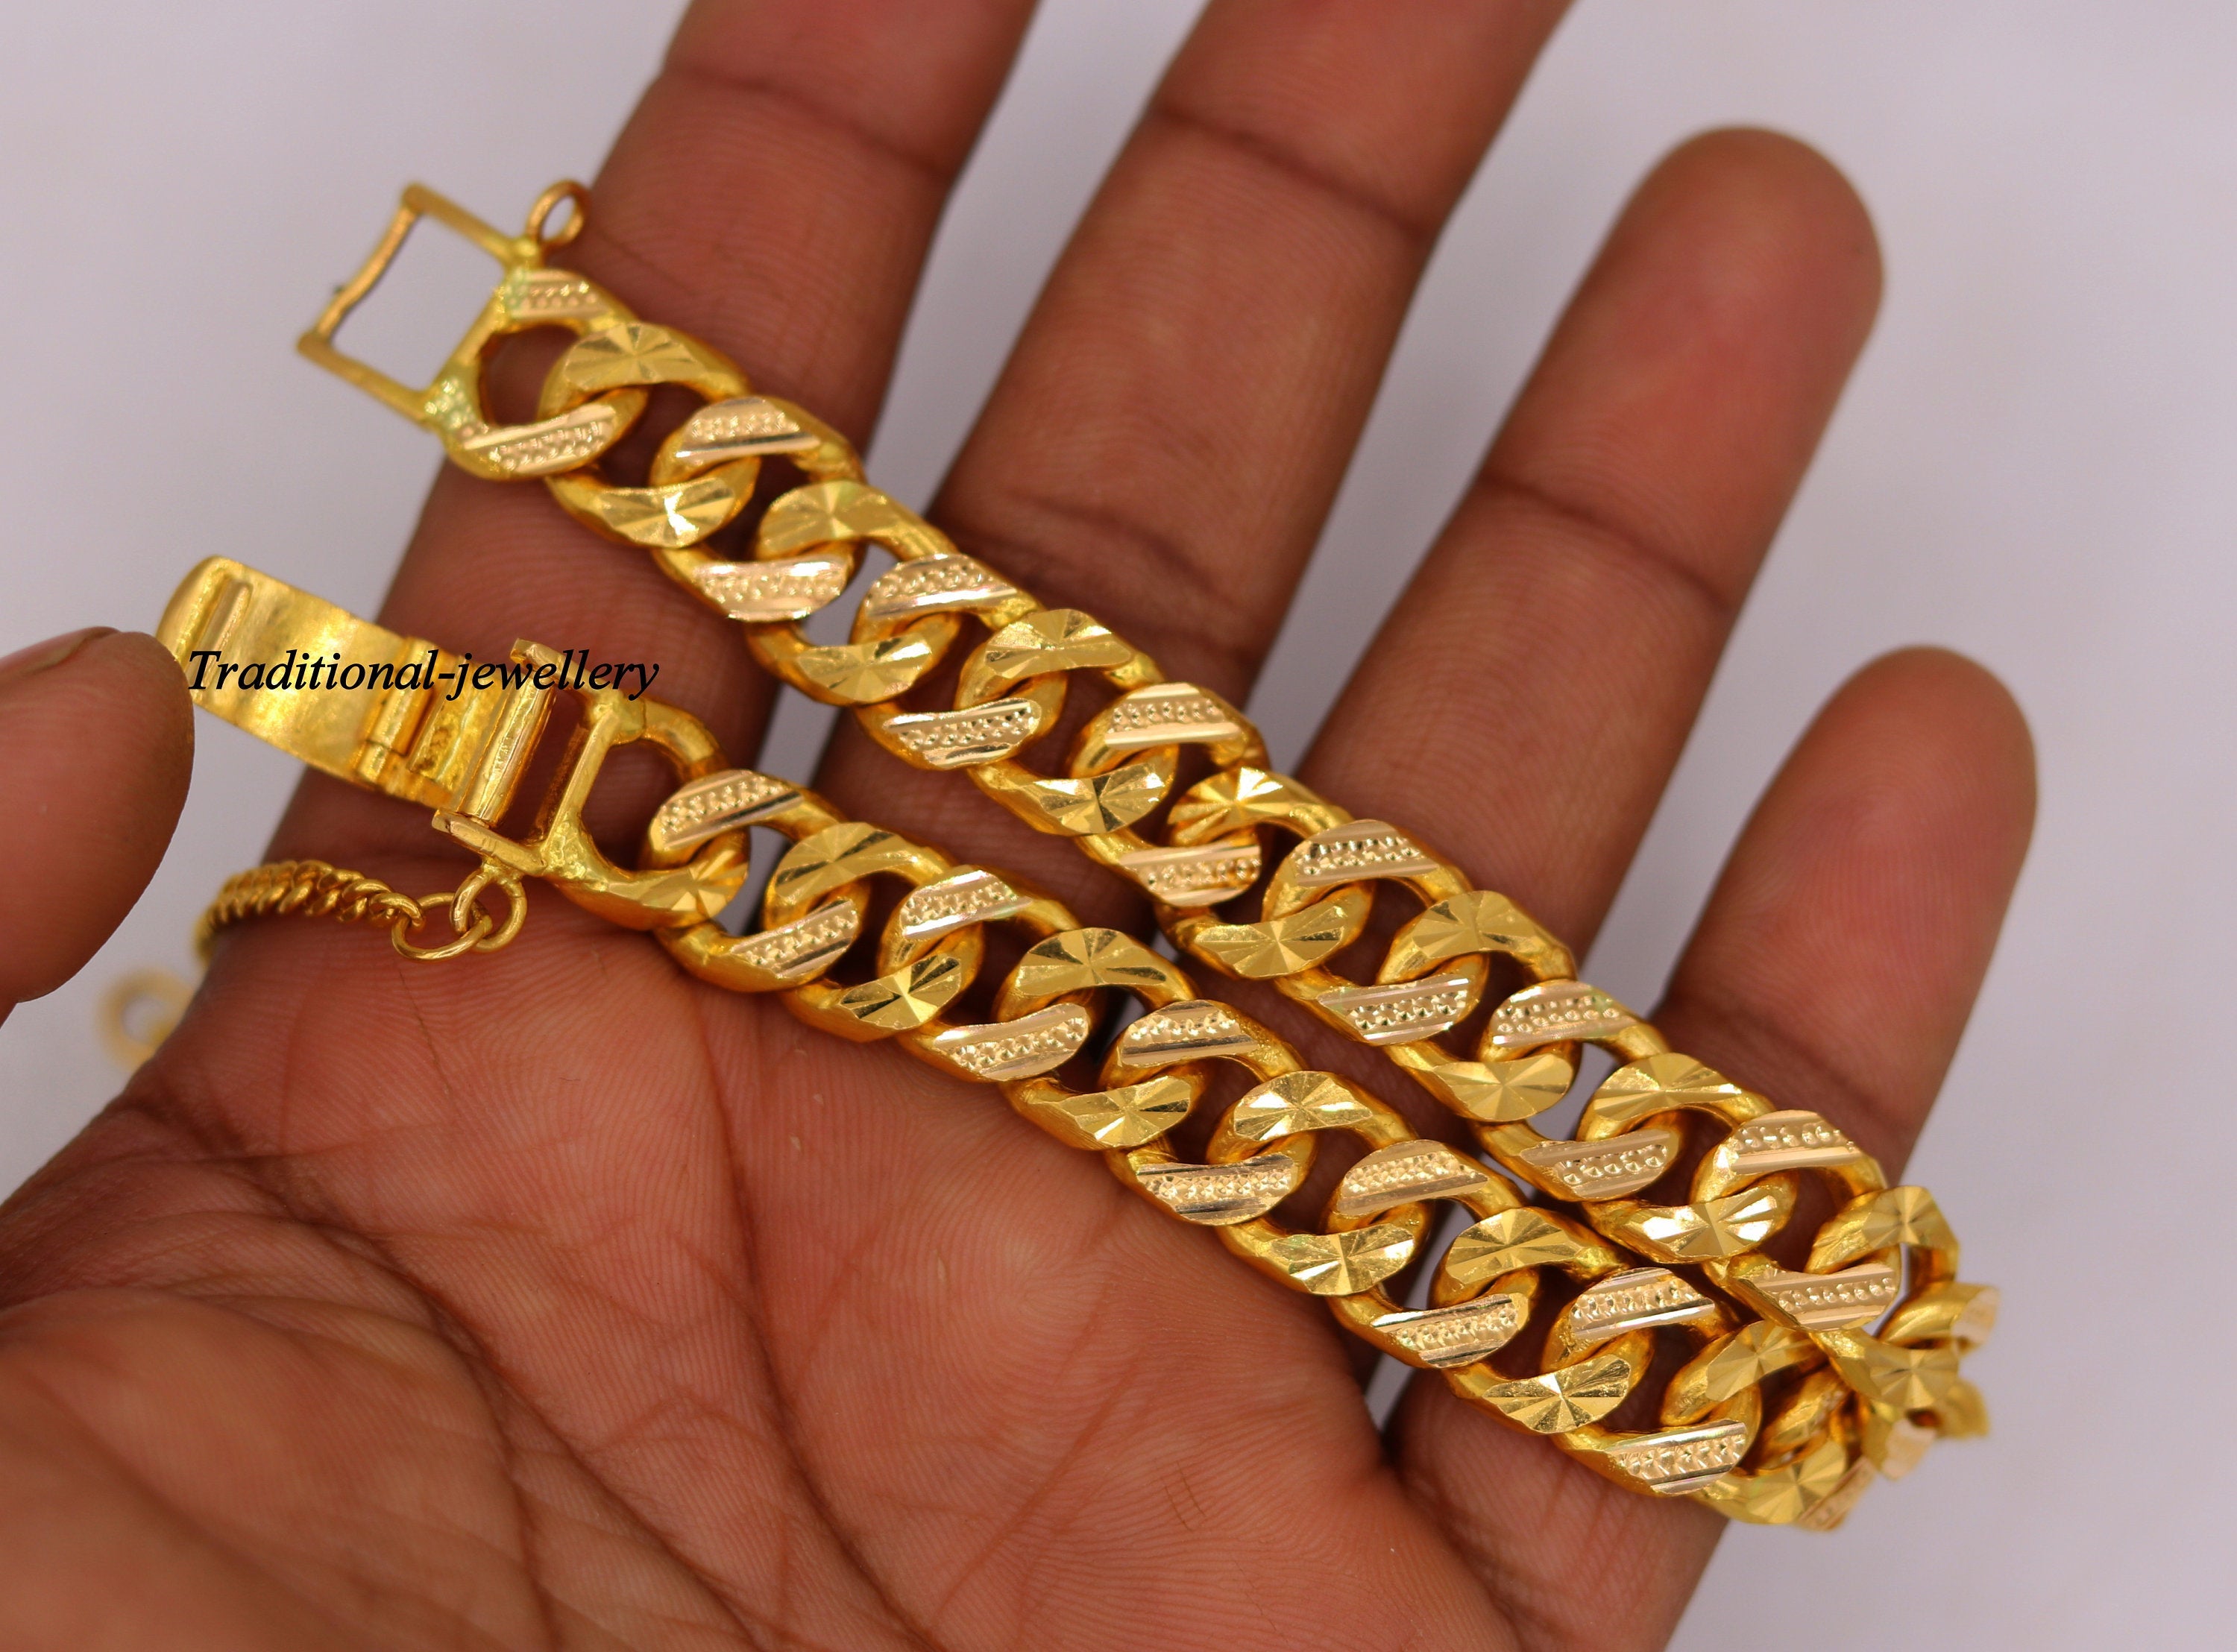 10mm Solid Cuban Link Bracelet in 14K Yellow Gold - Las Villas